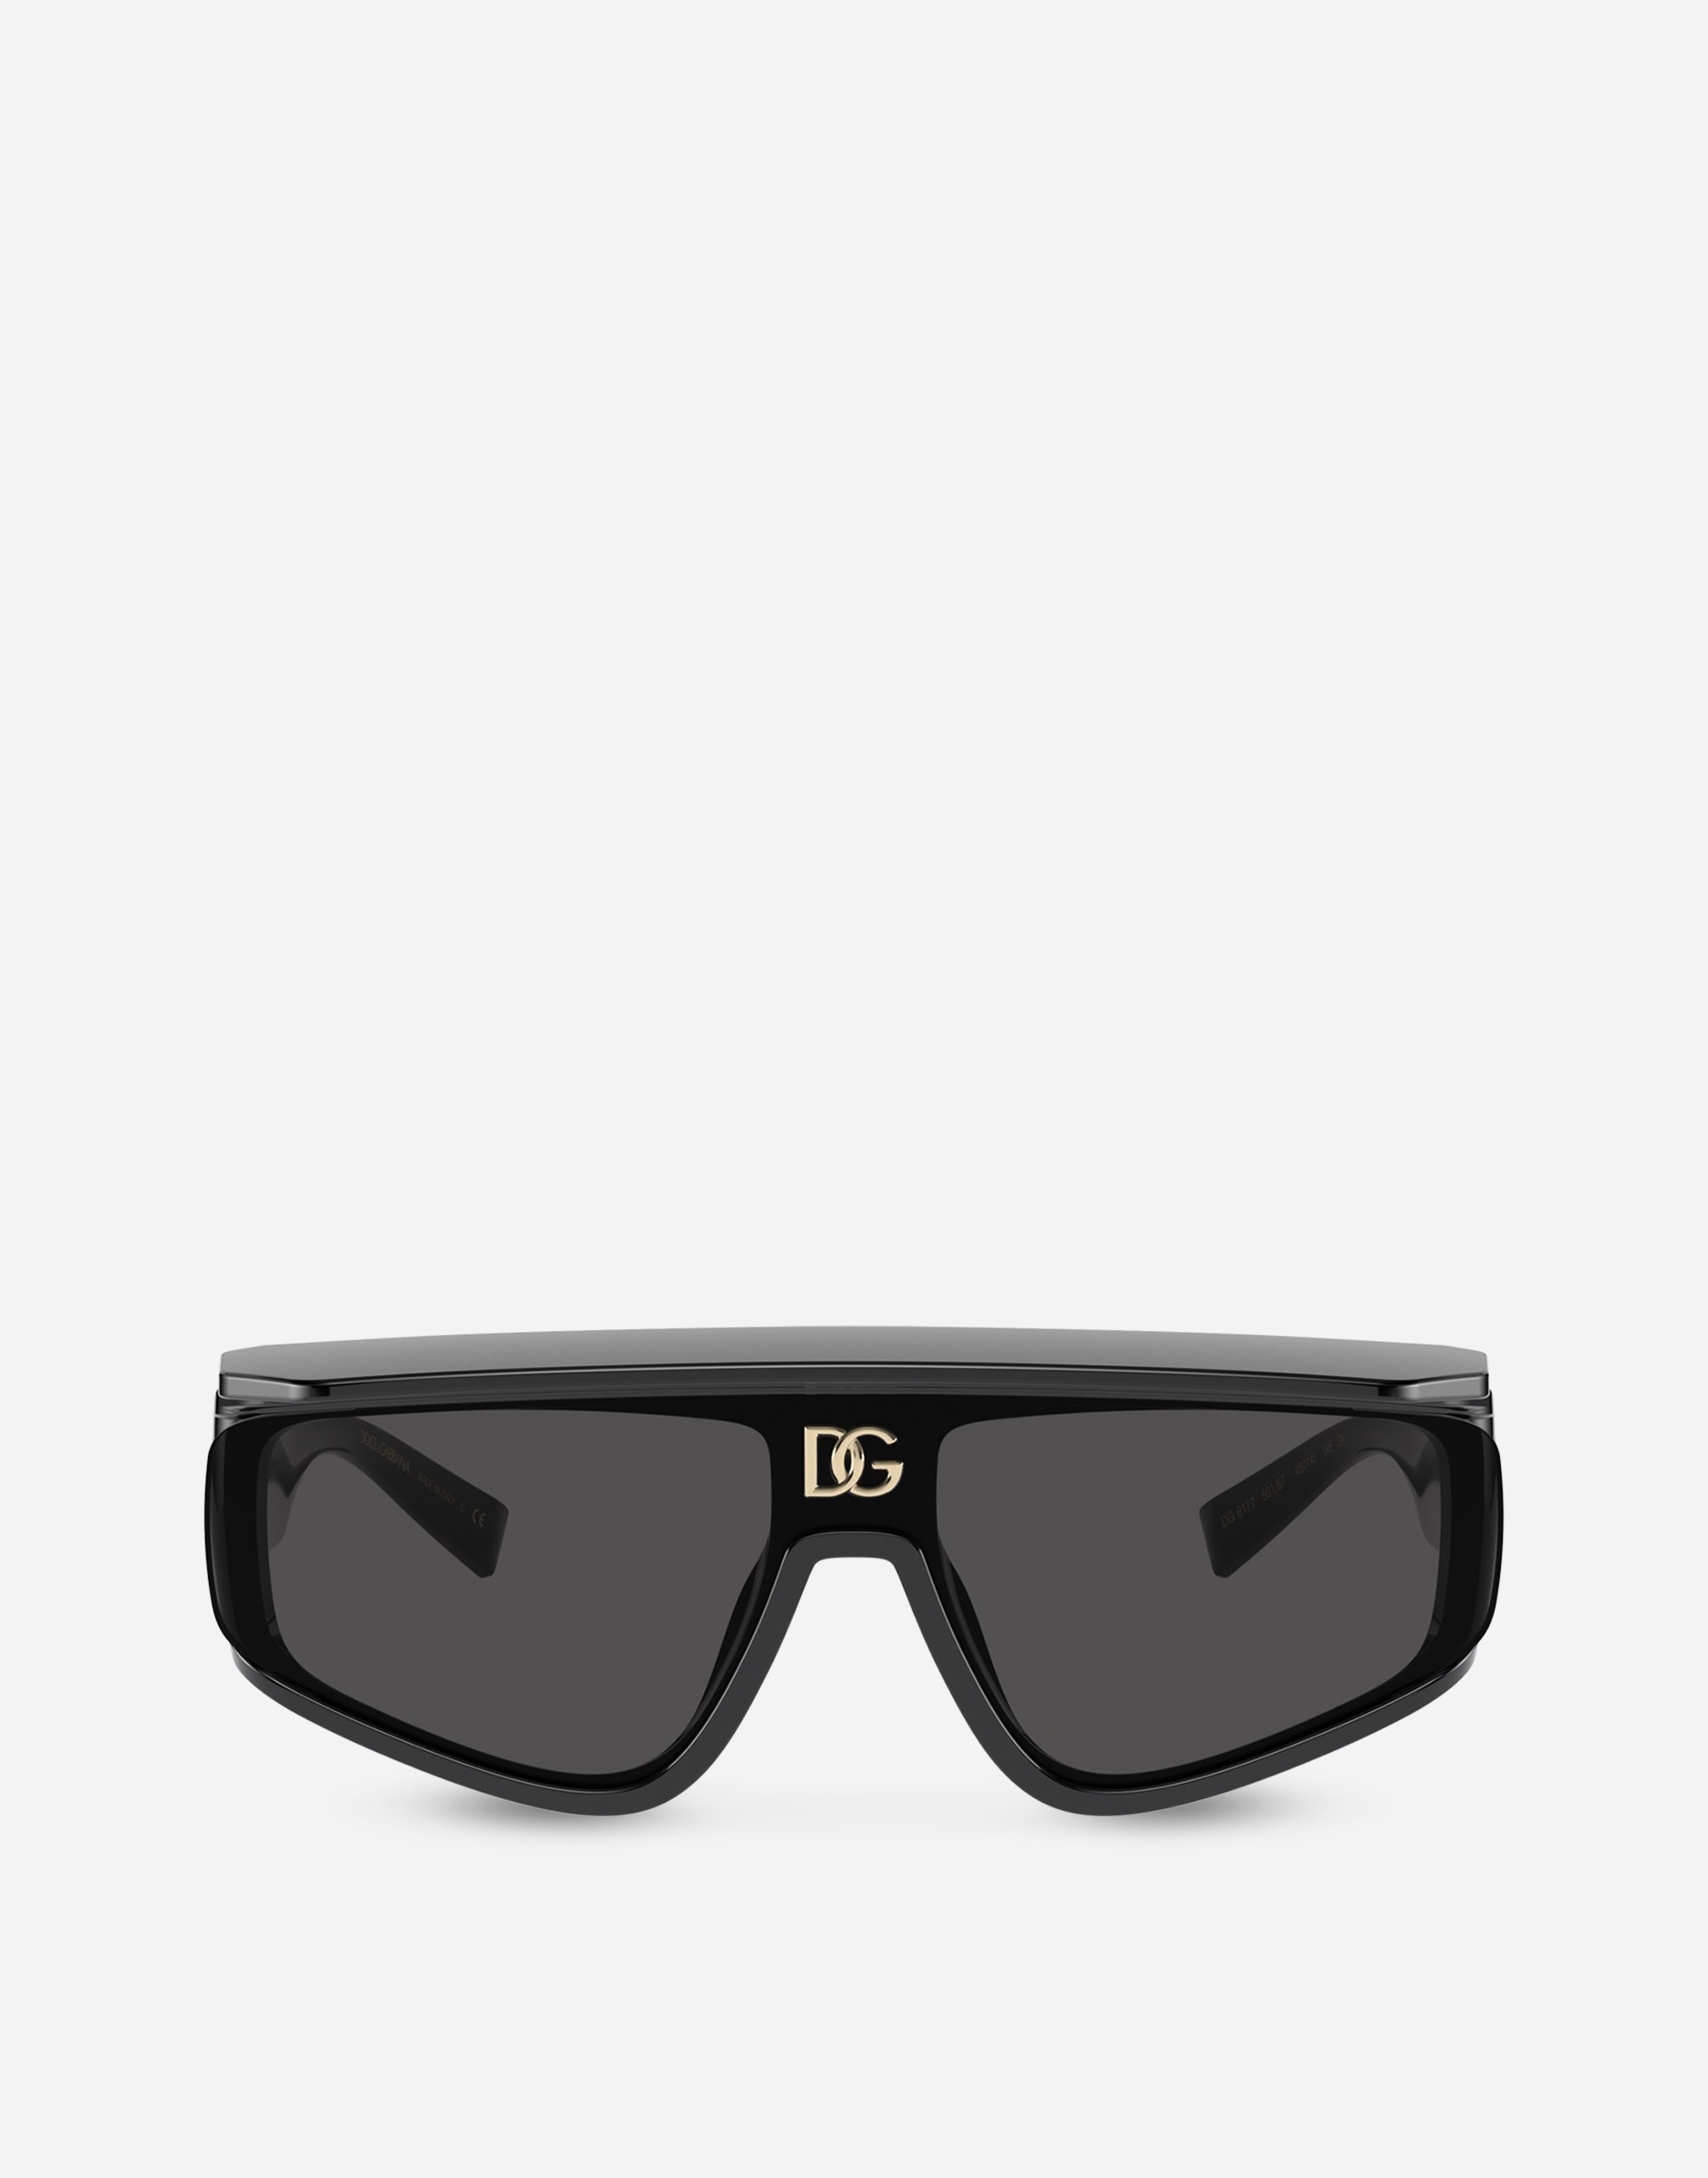 DG crossed sunglasses in Black